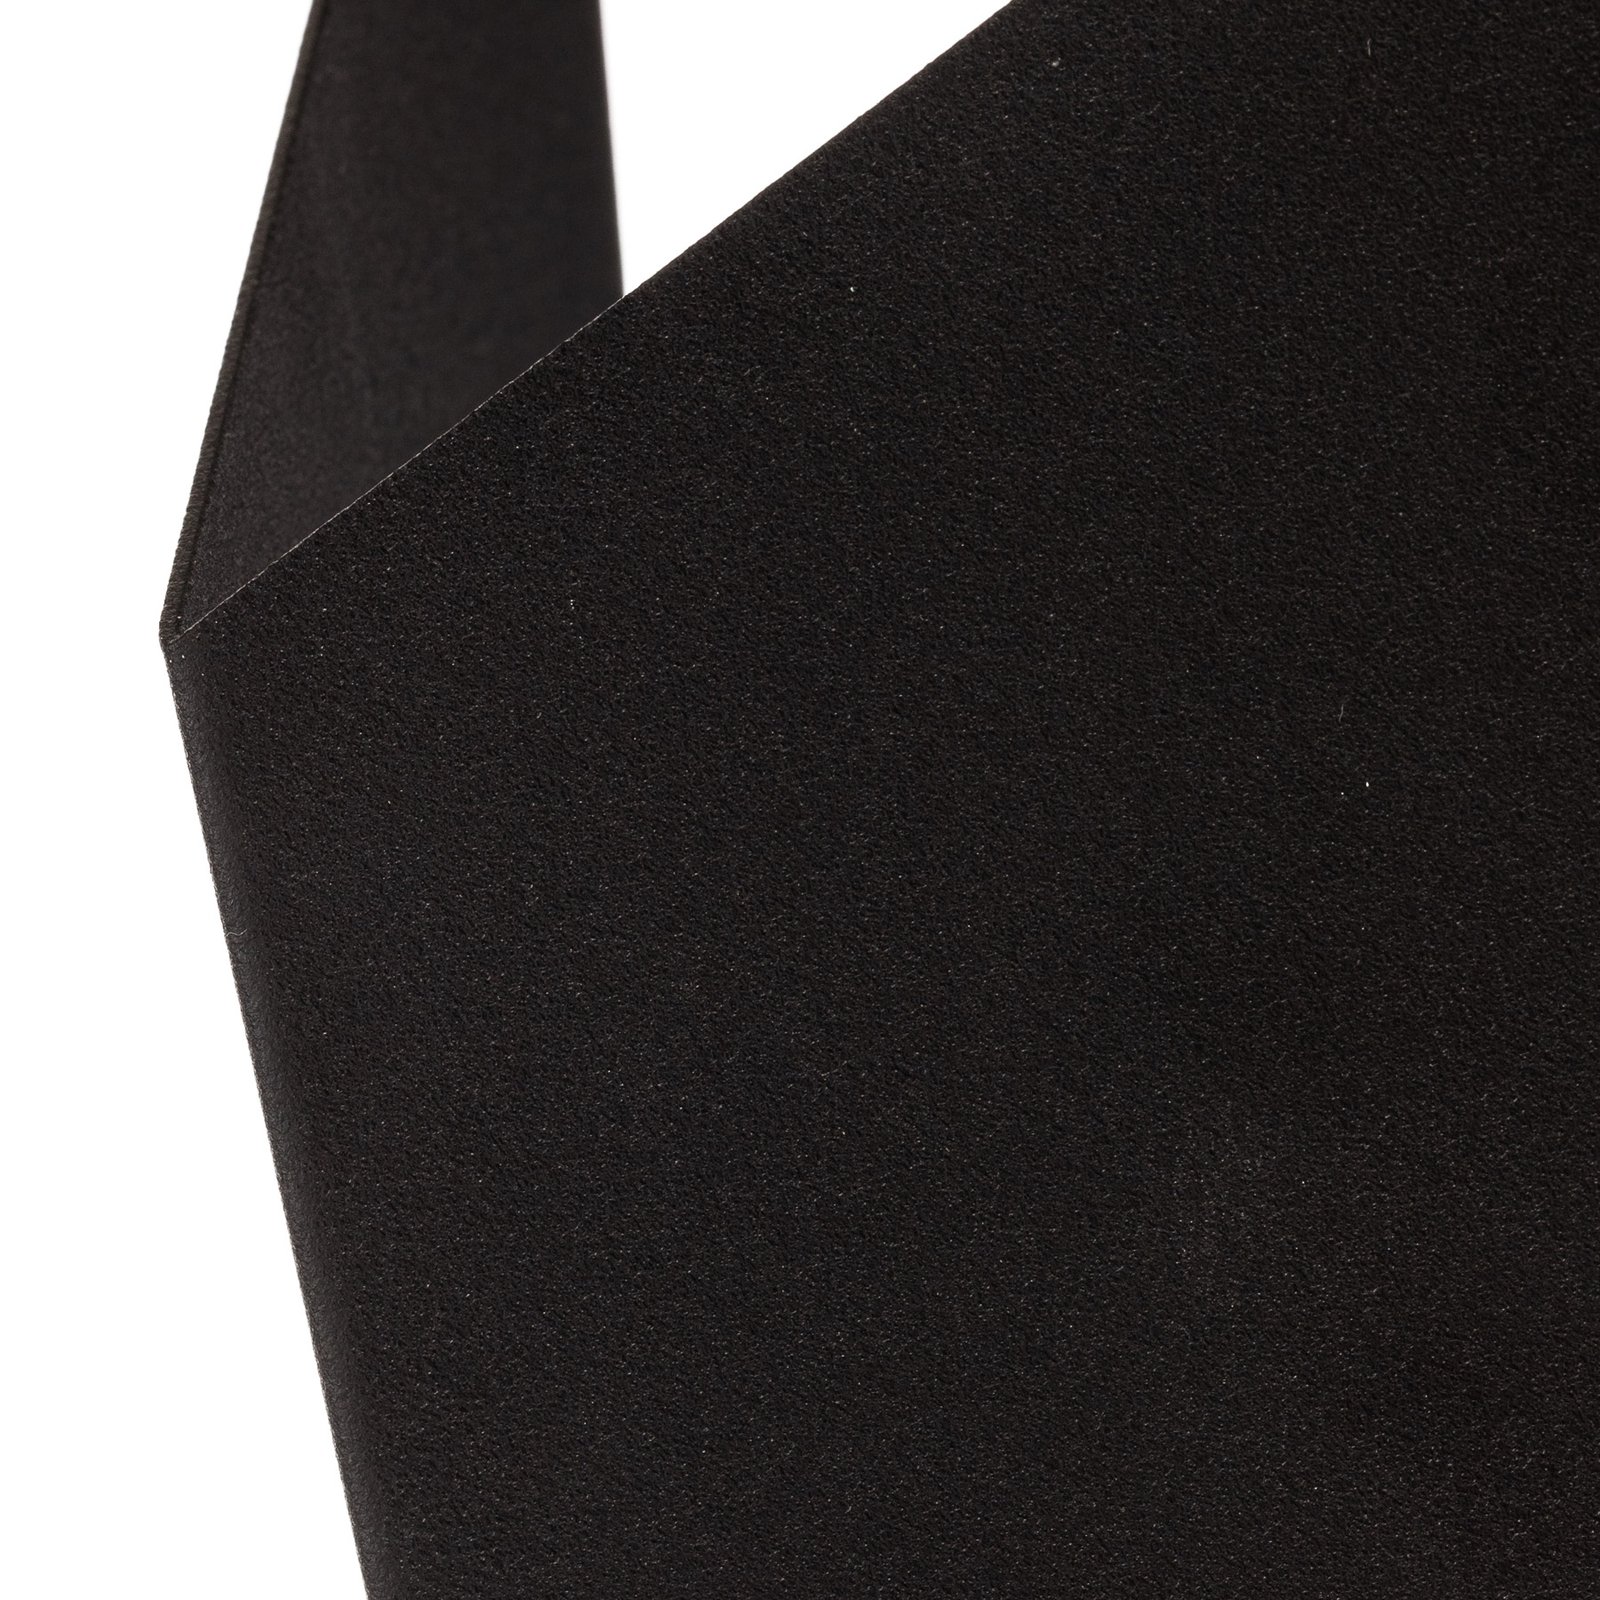 Nástenné svetlo Form 4, čierna, 19 x 30 cm